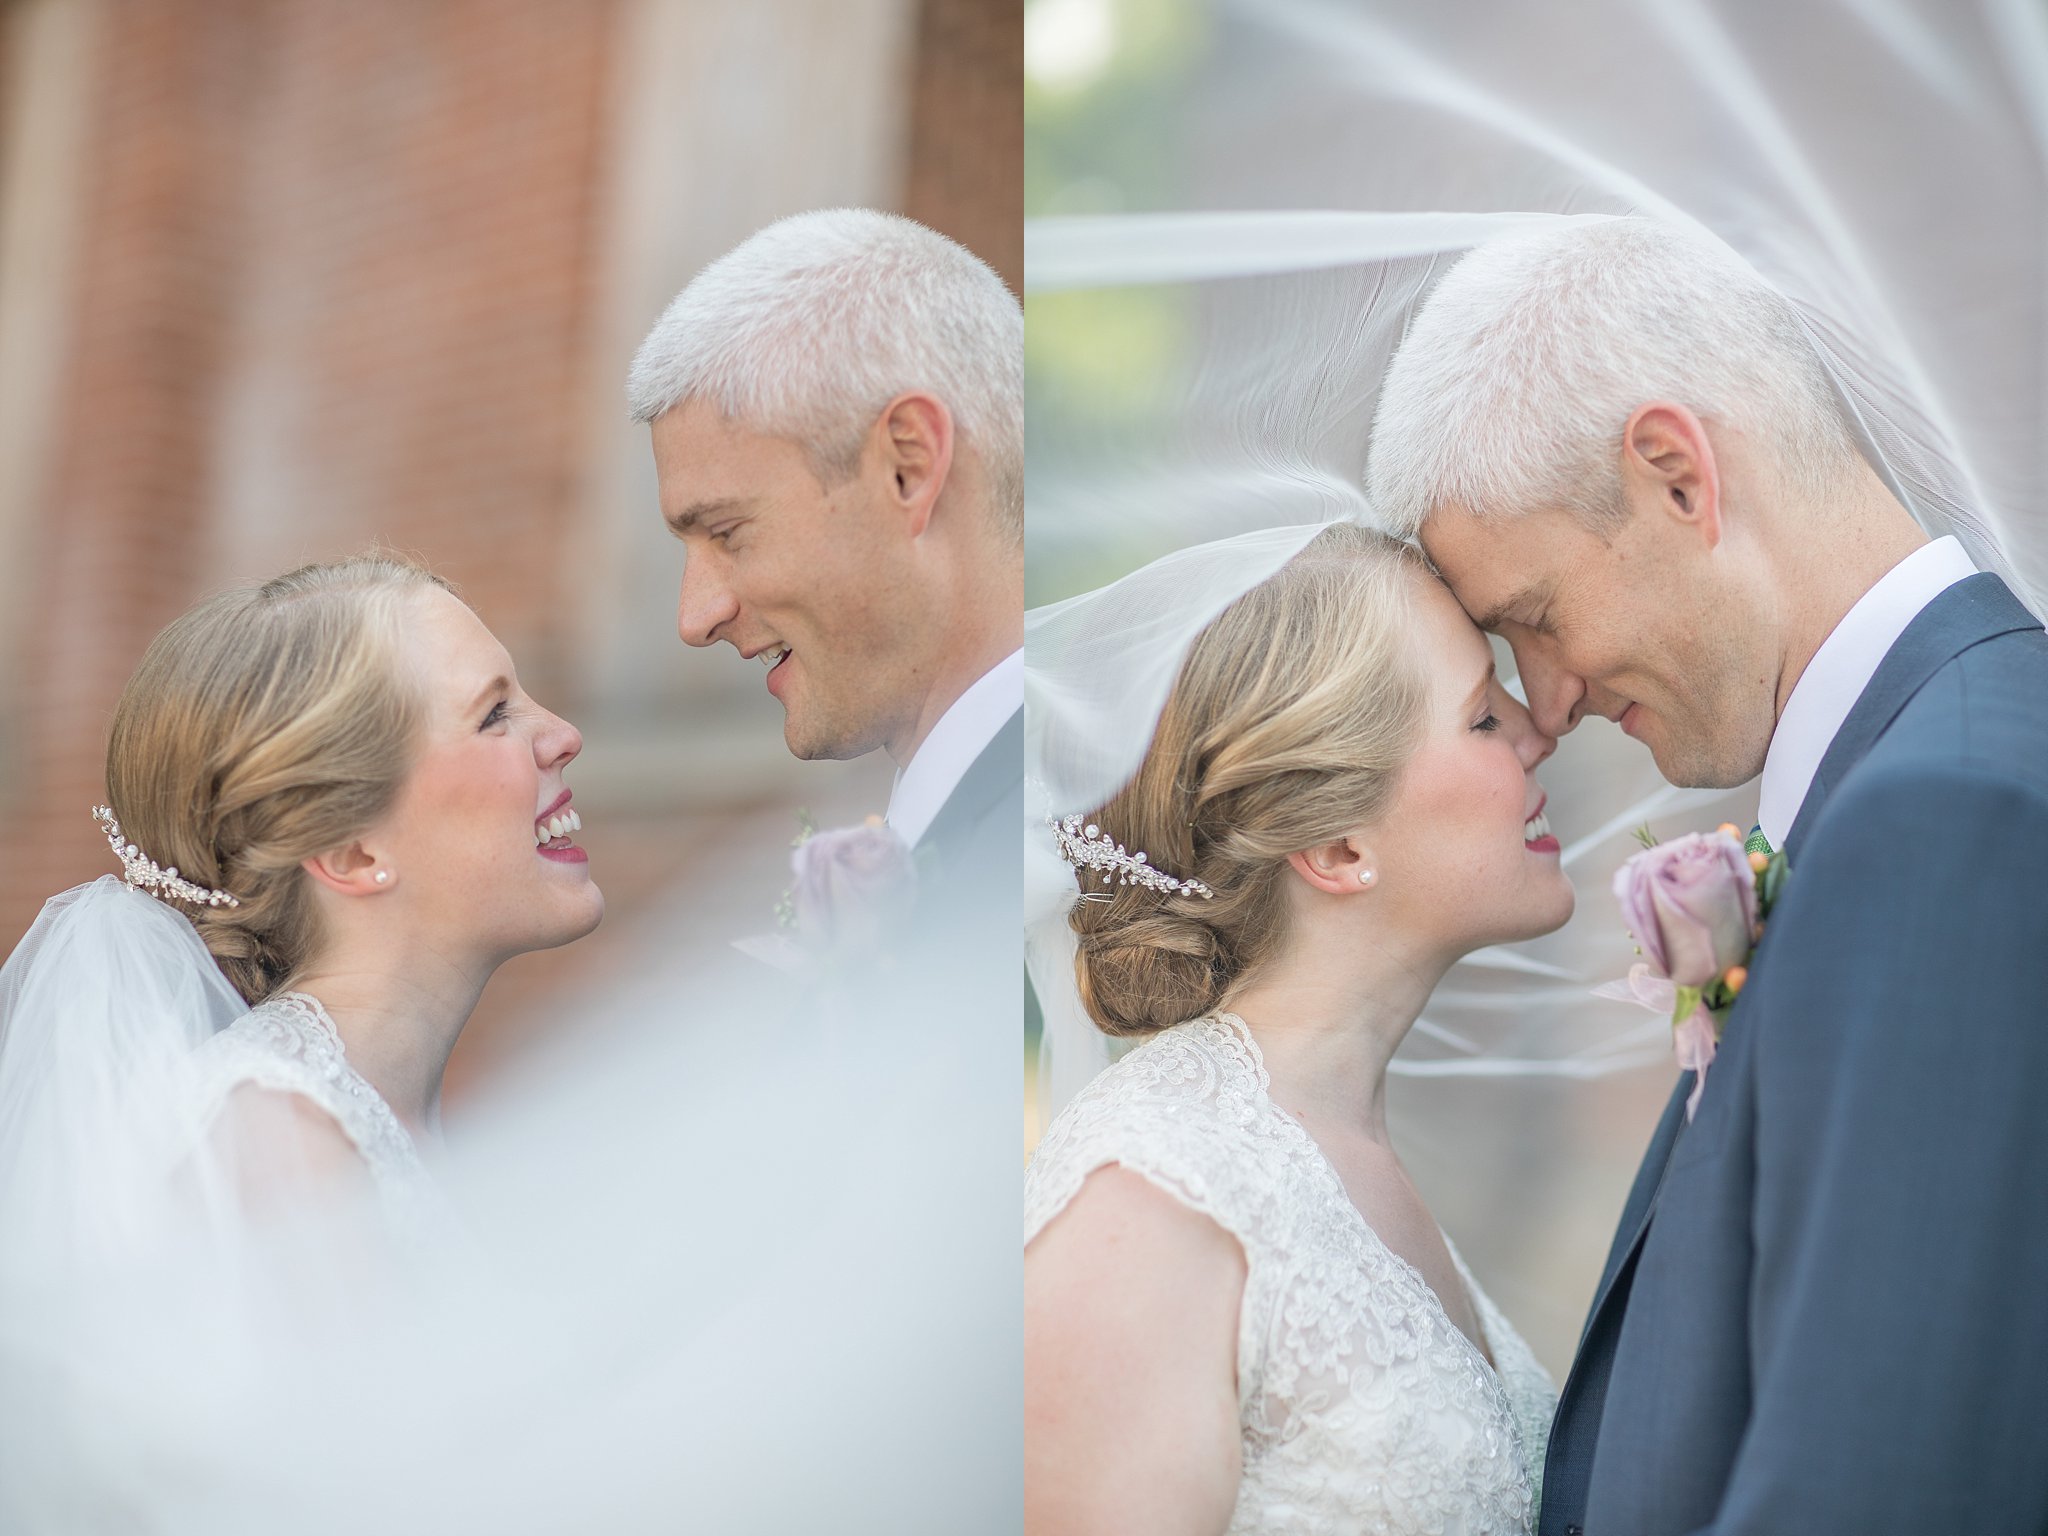 Megan + Phil | St. Peter Catholic Church | La Porte Indiana Wedding Photographer | Toni Jay Photography